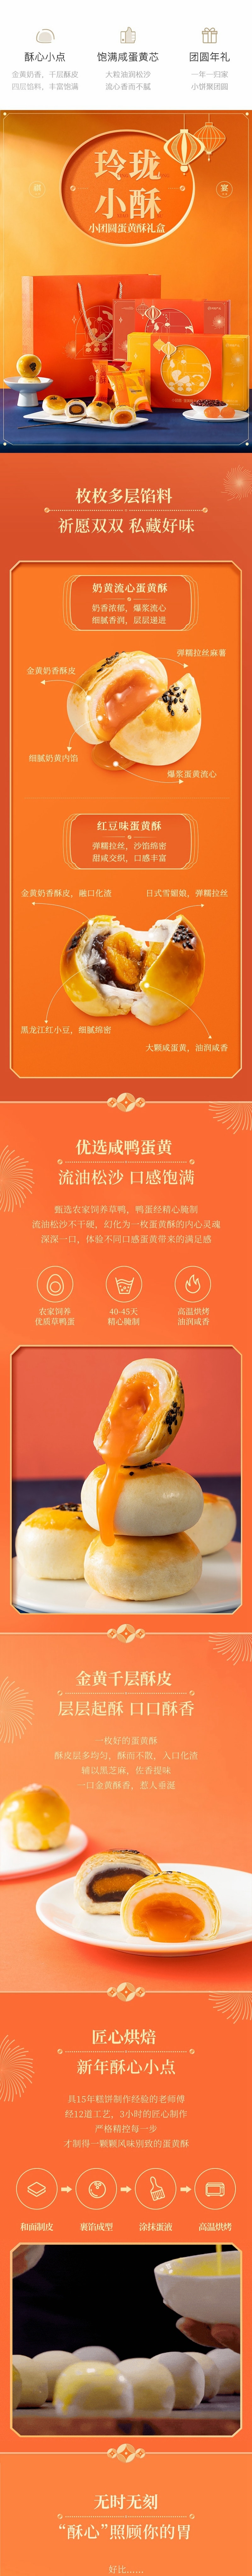 【中国直邮】网易严选 蛋黄酥礼盒 传统糕点心 网红零食小吃 红豆味 53克*6枚 